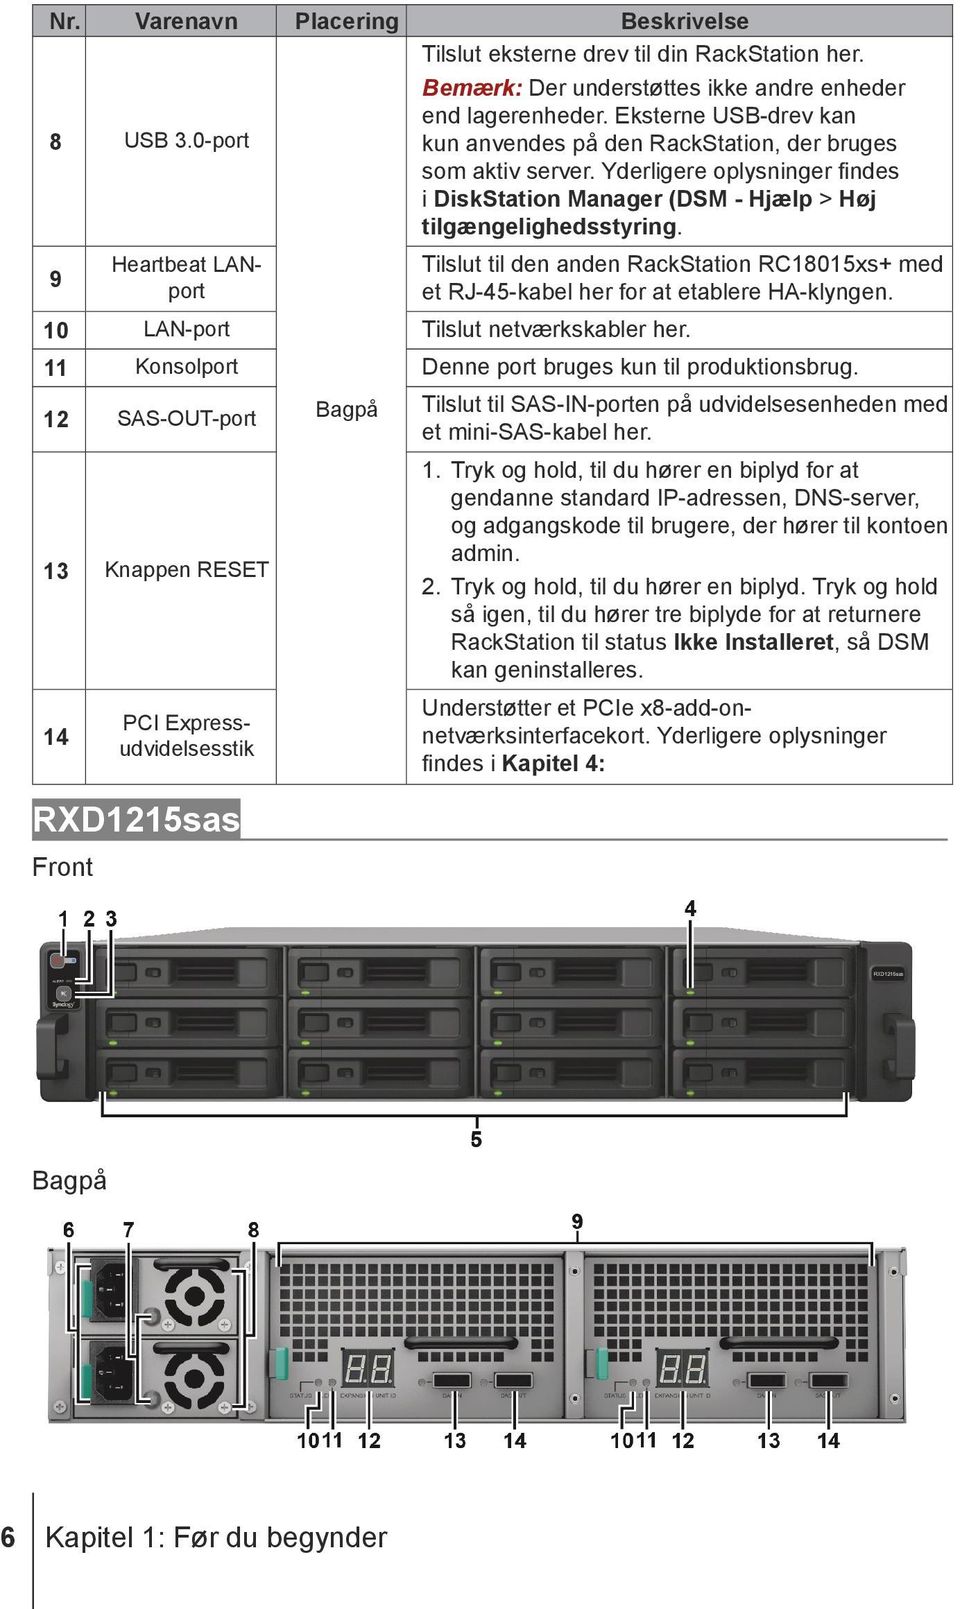 9 Heartbeat LANport Bagpå Tilslut til den anden RackStation RC18015xs+ med et RJ-45-kabel her for at etablere HA-klyngen. 10 LAN-port Tilslut netværkskabler her.